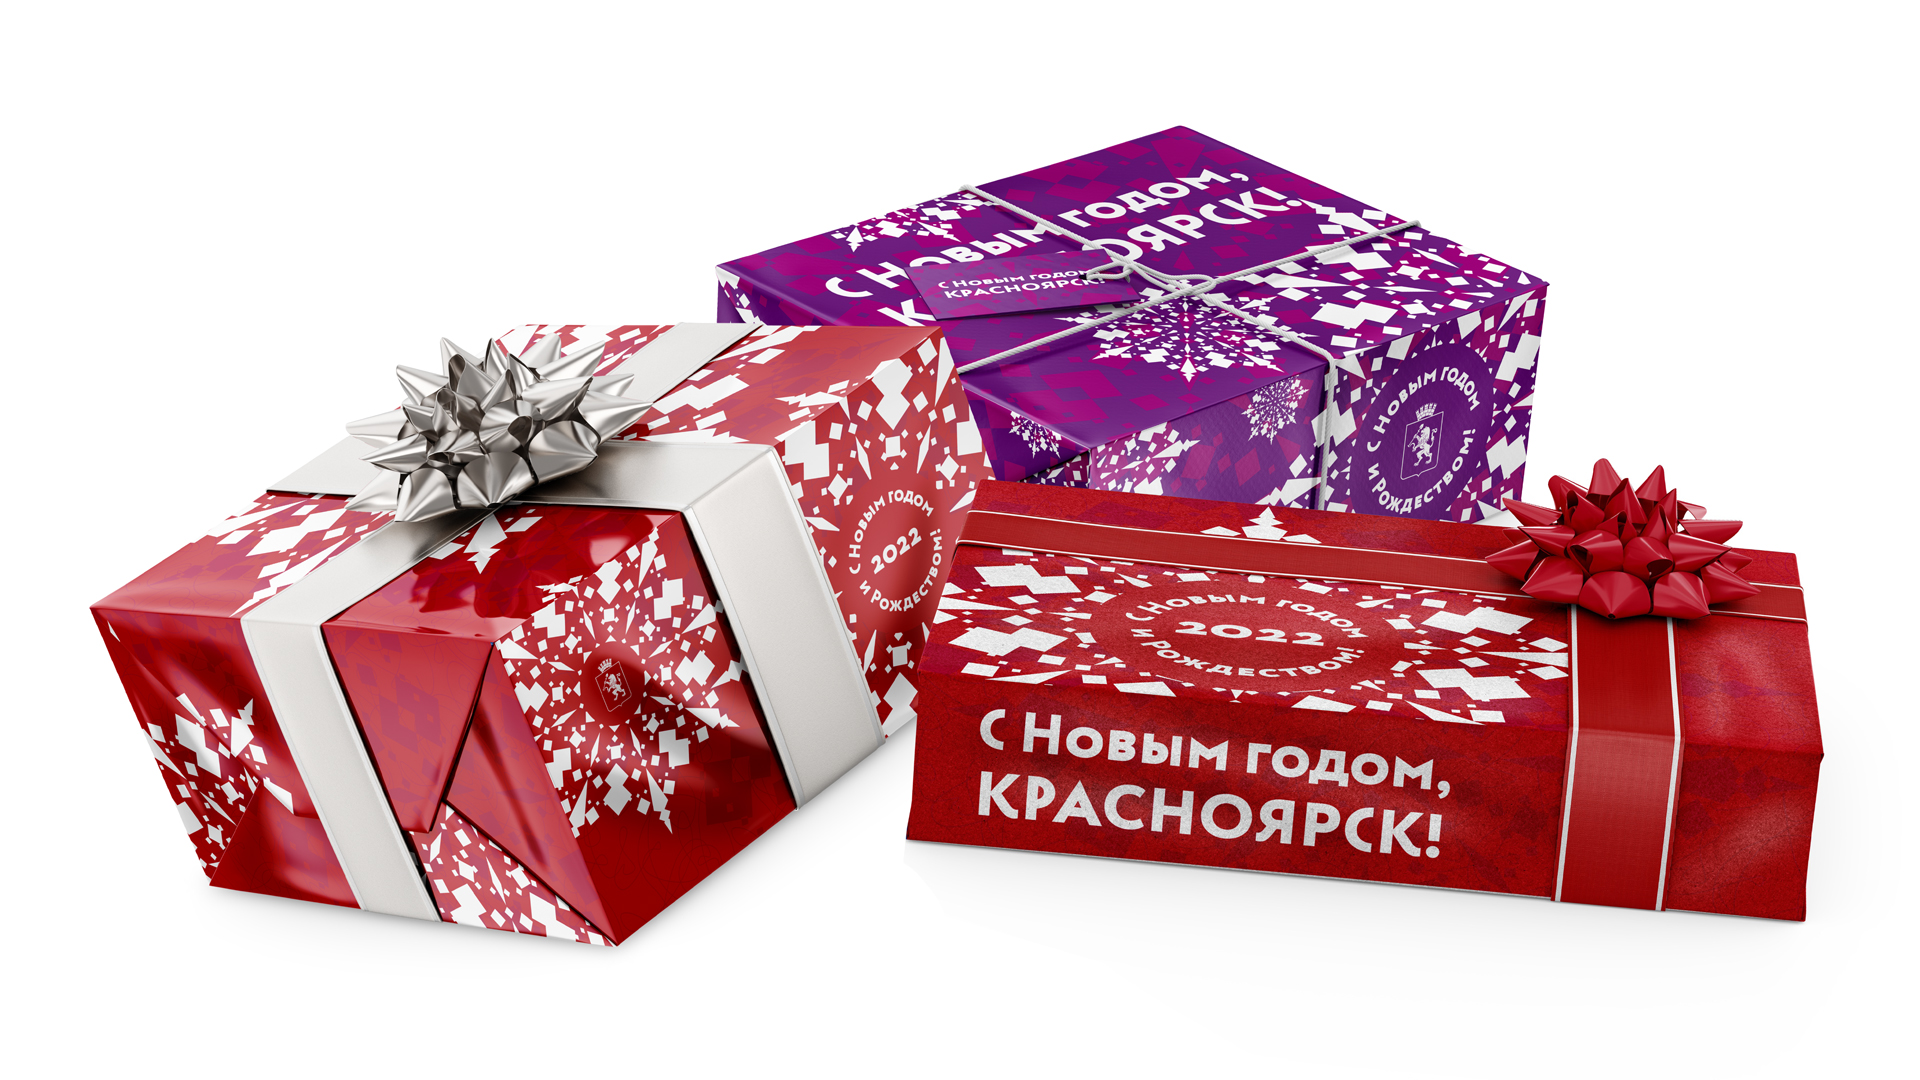 Новый год и рождество в Красноярском крае — проект Лаборатории развития